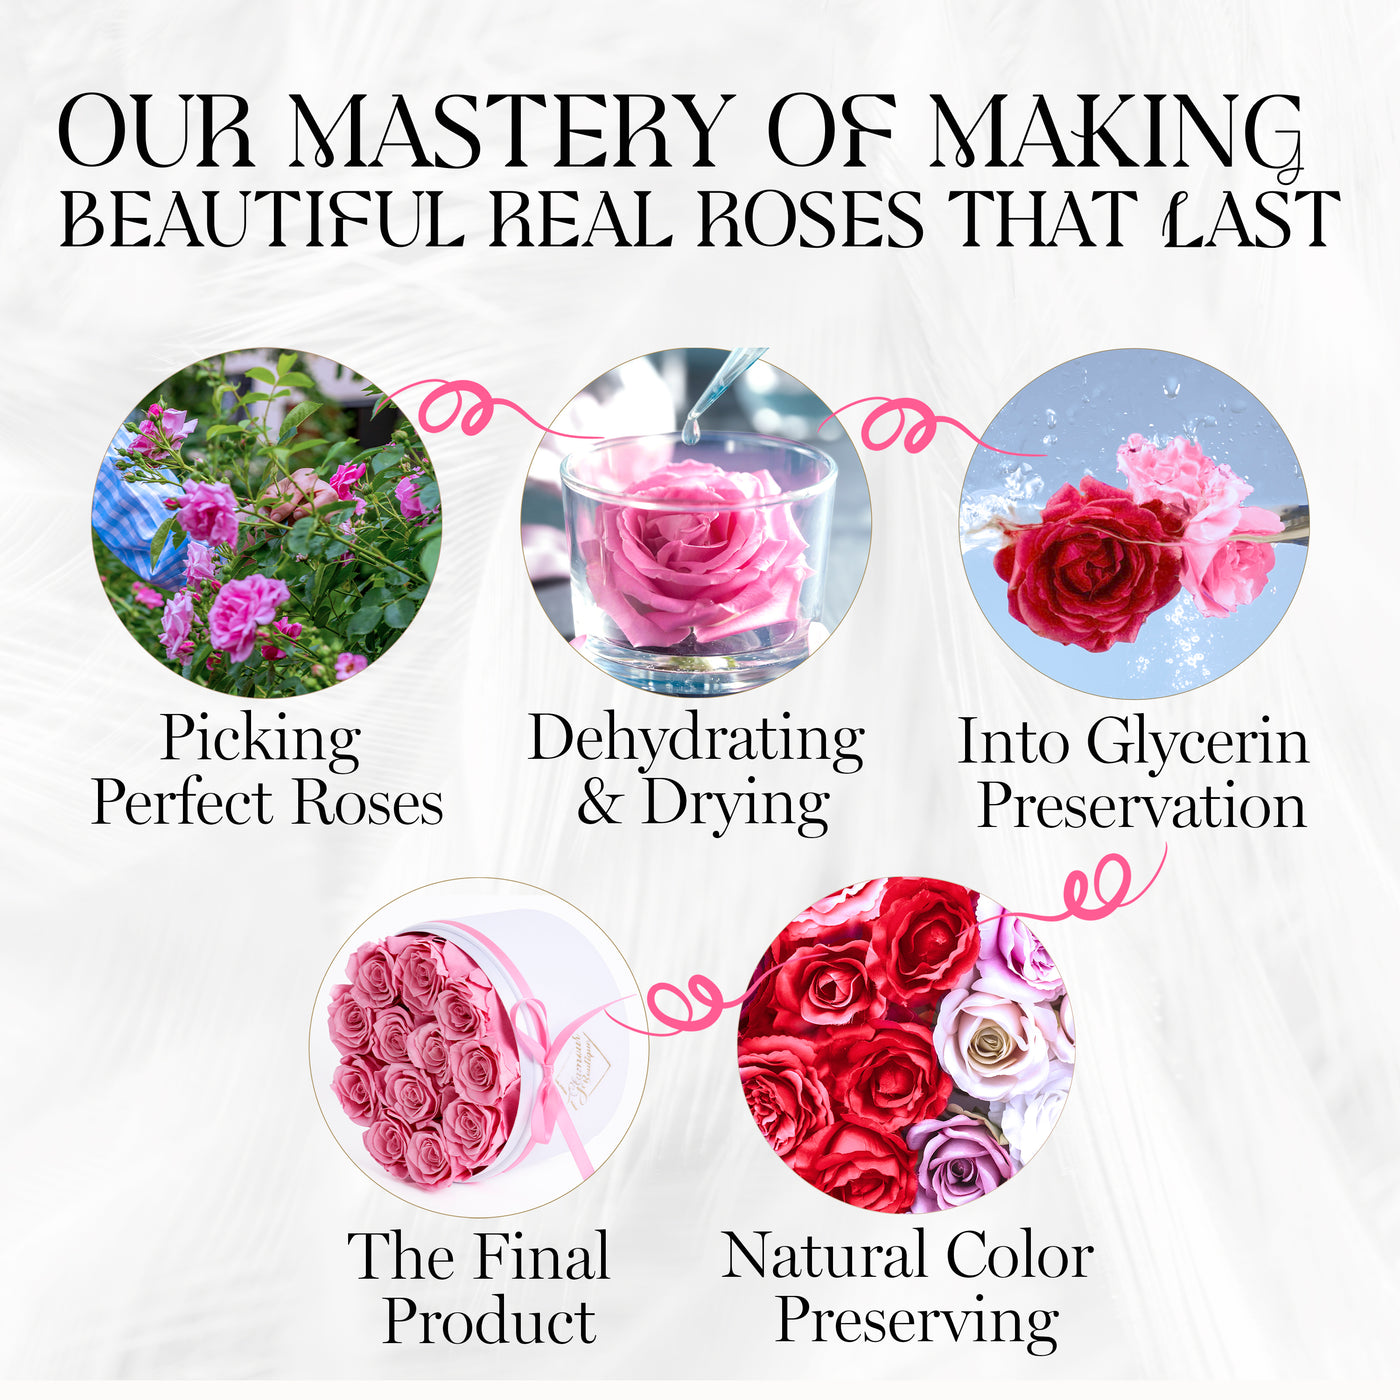 12 Preserved Real Roses in Round Velvet White Box - Pink